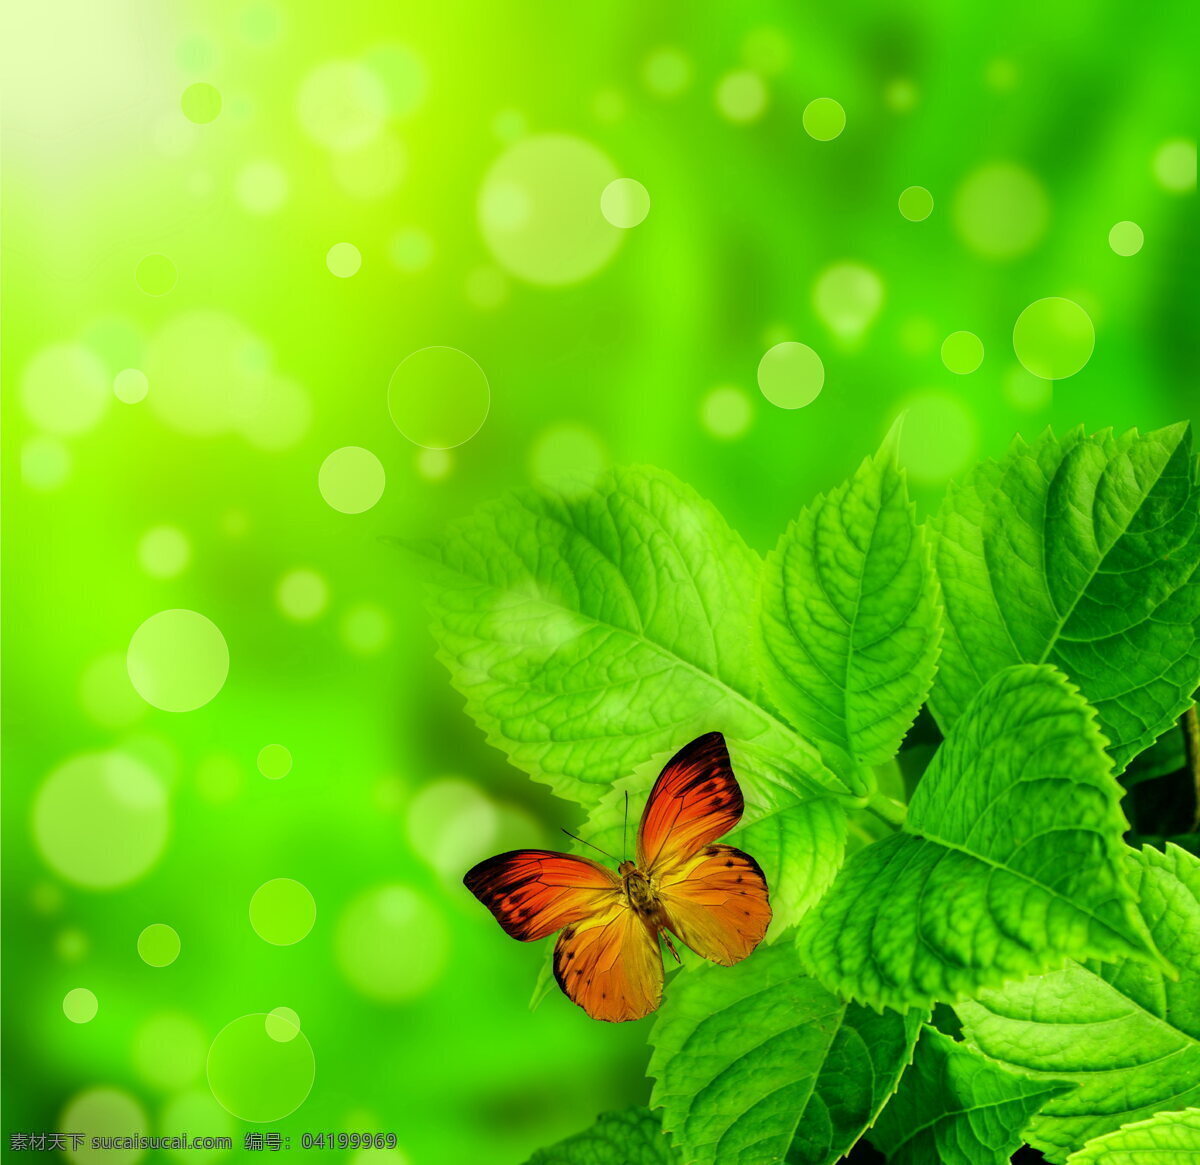 绿叶 蝴蝶 叶子 蝴蝶飞舞 绿叶背景 绿色植物 植被 树叶 植物 嫩叶 漂亮蝴蝶 彩蝶 翅膀 飞舞 飞蝶 生物世界 昆虫